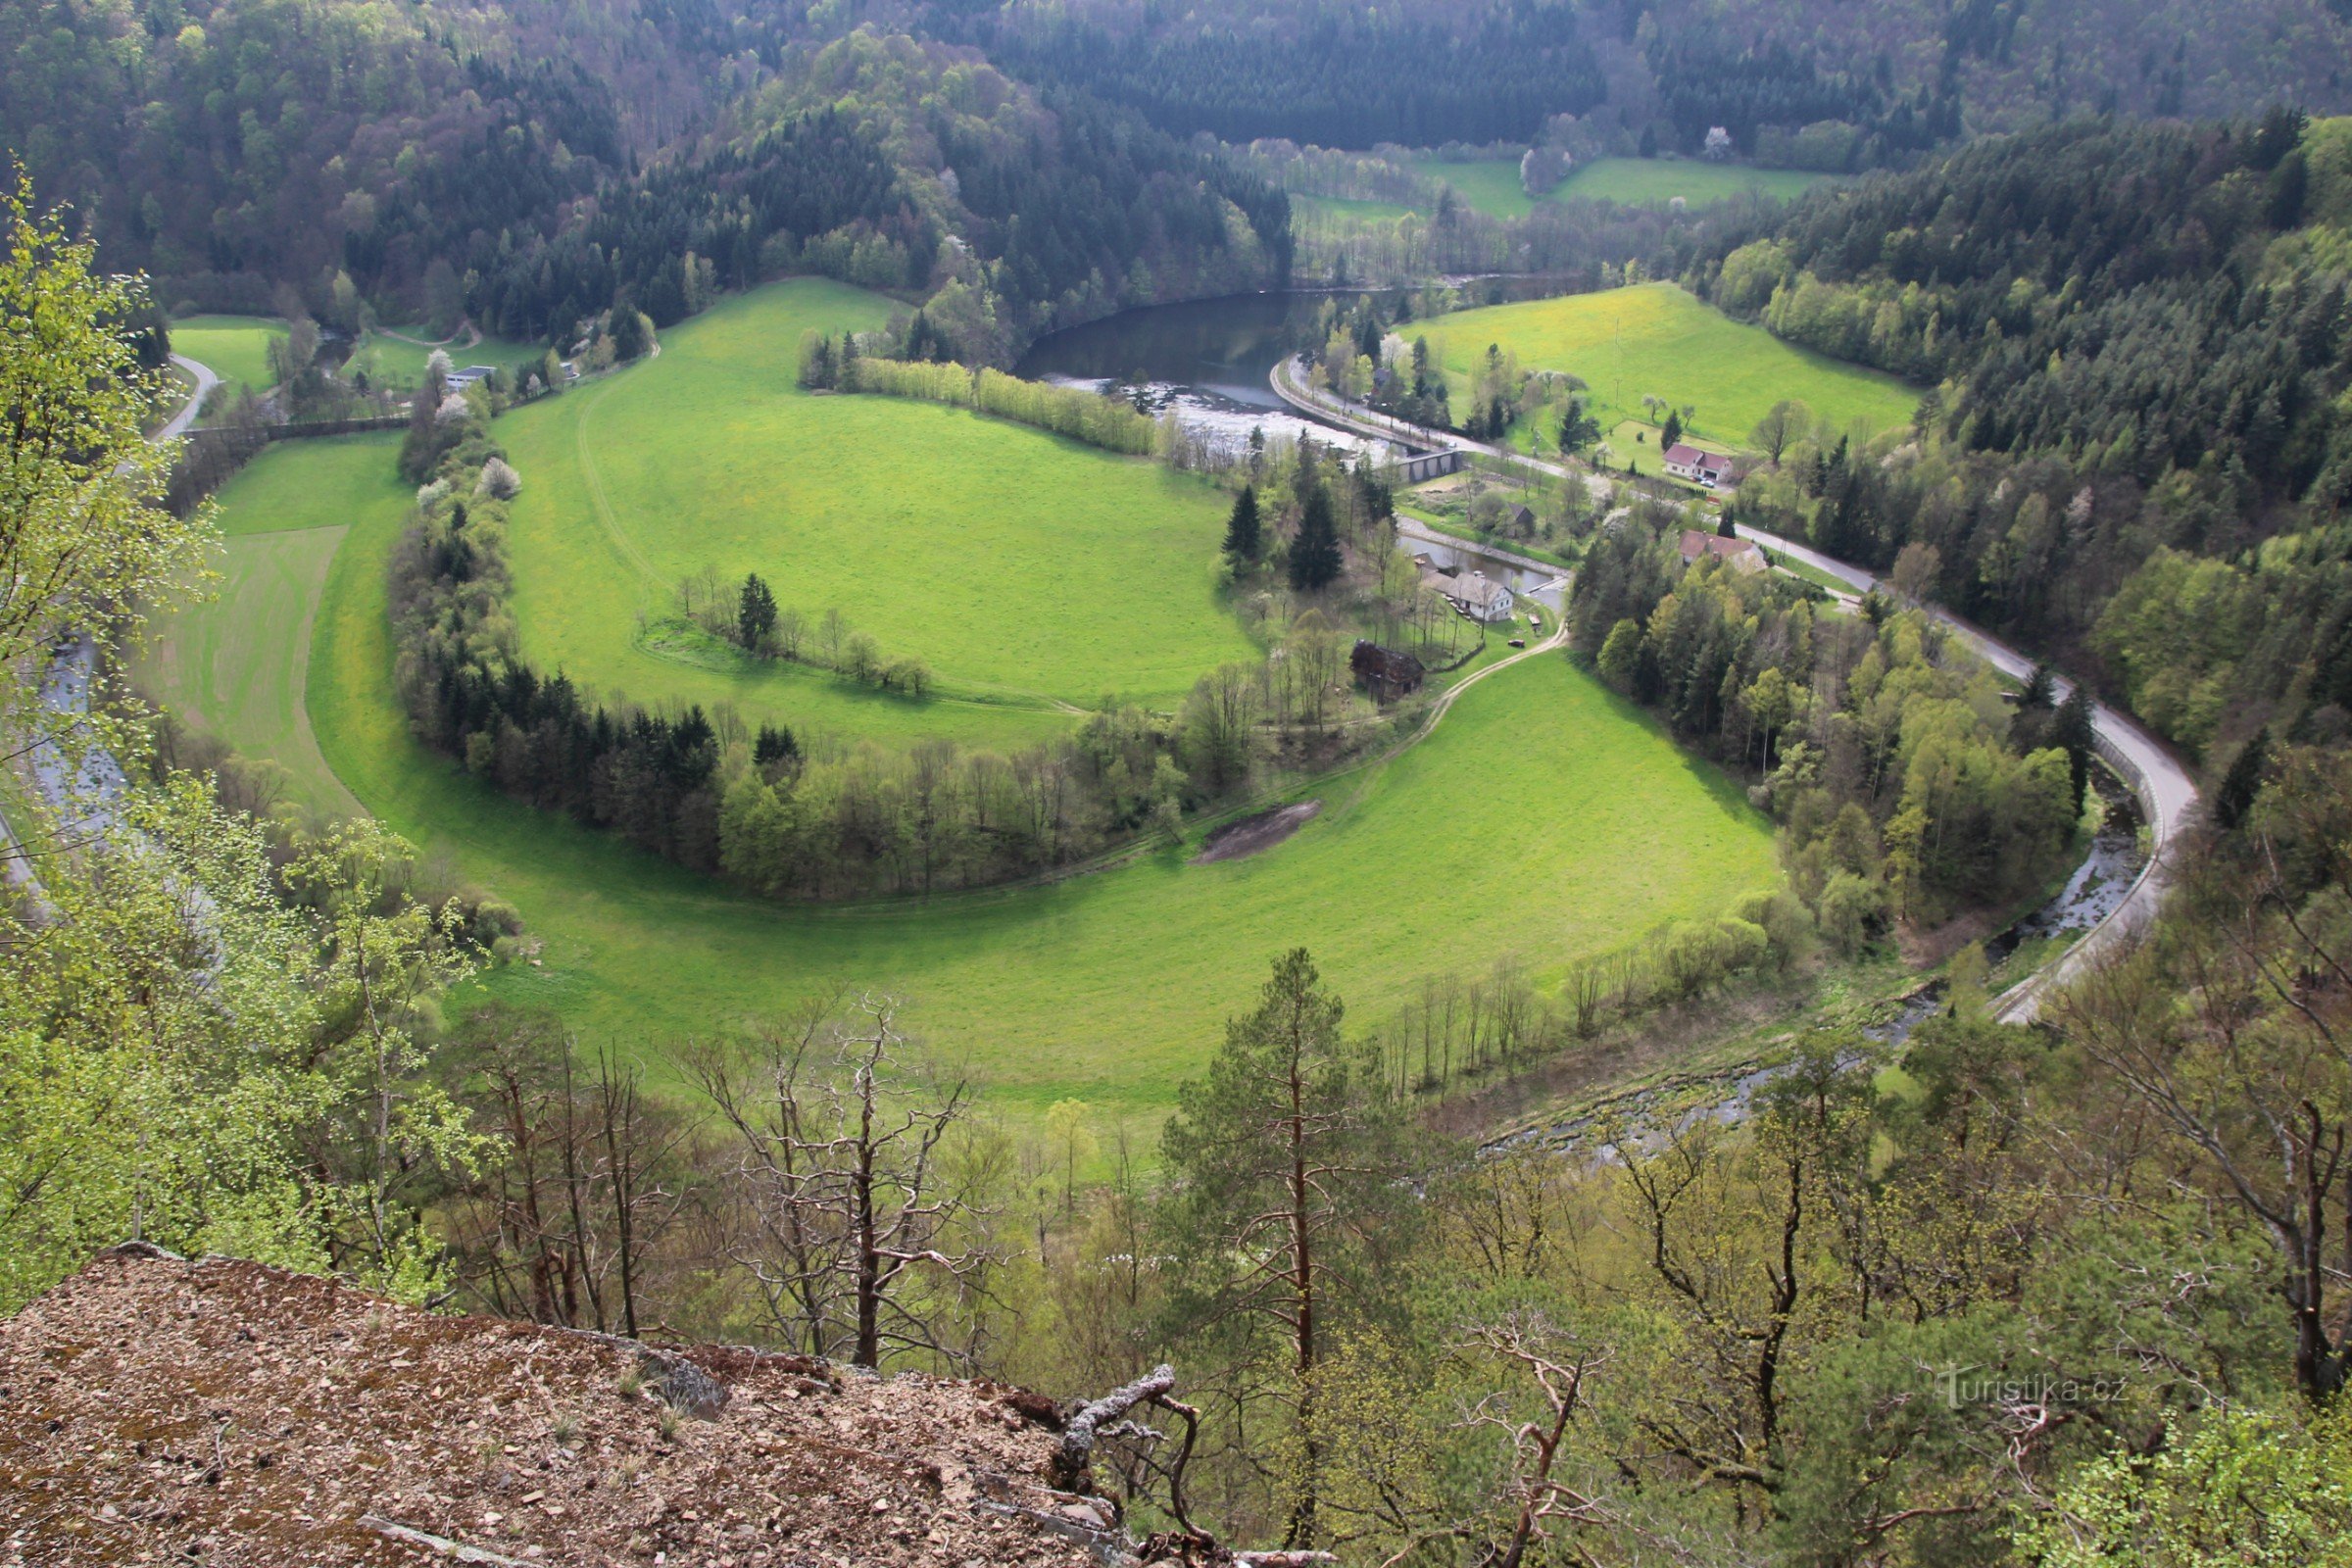 Pogled na dolino ob širokem meandru reke Svratke, skozi katero poteka podzemni dovod